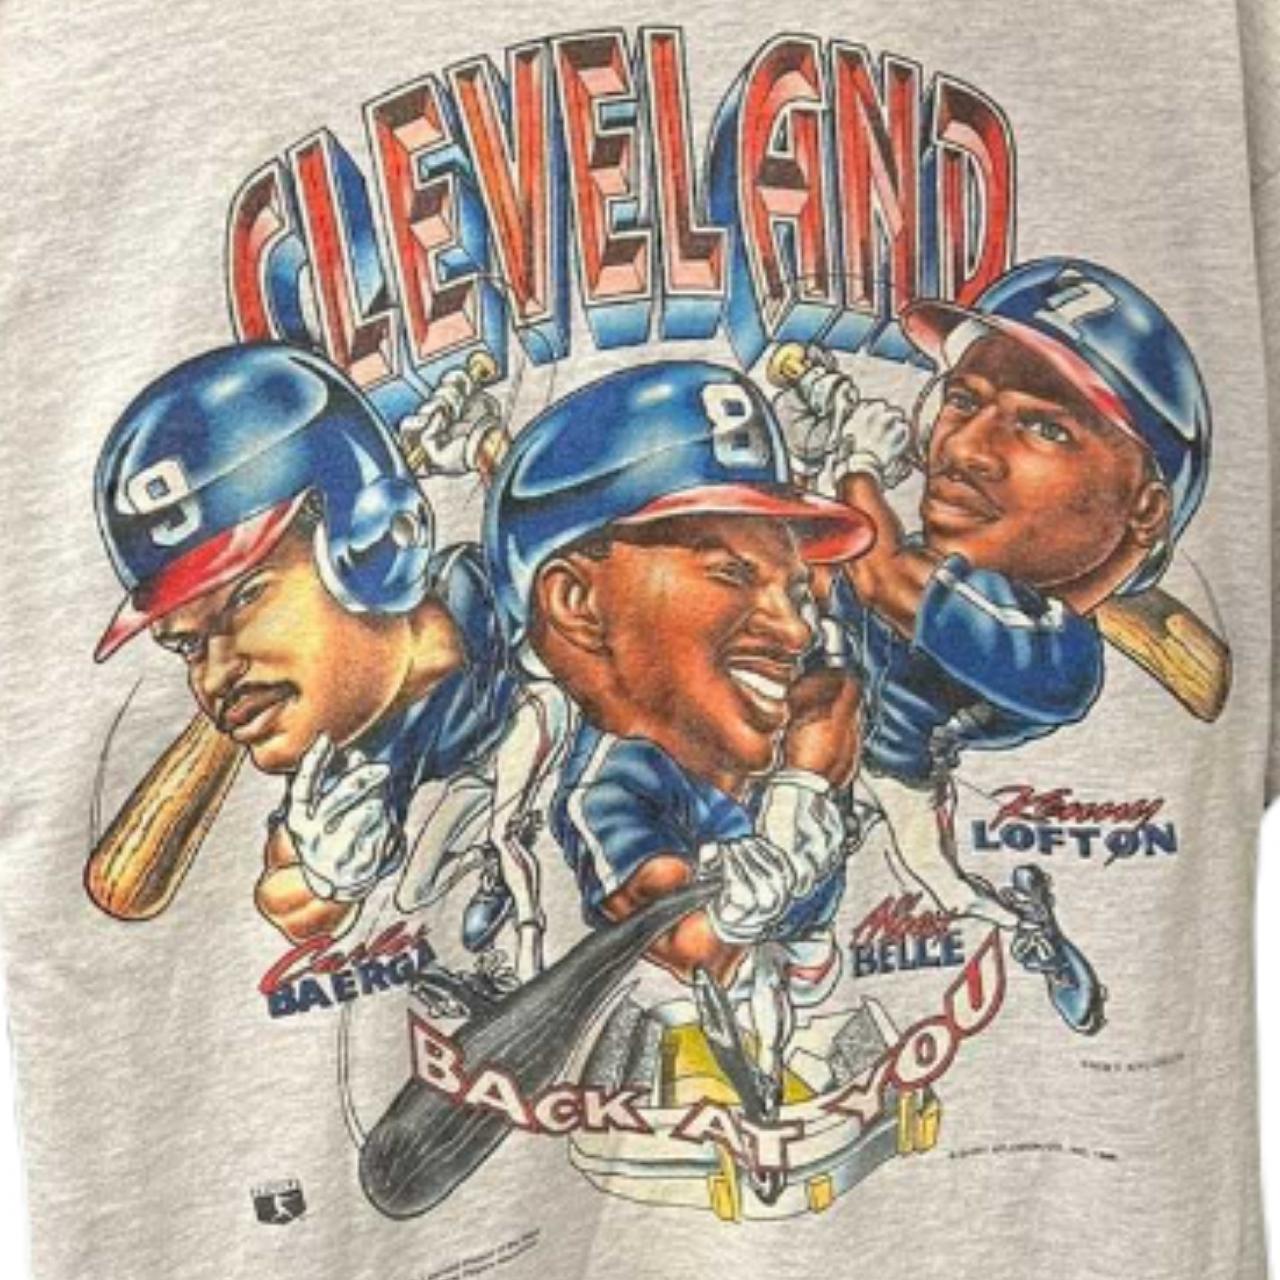 Vineyard Vines x MLB Cleveland Indians Shep - Depop